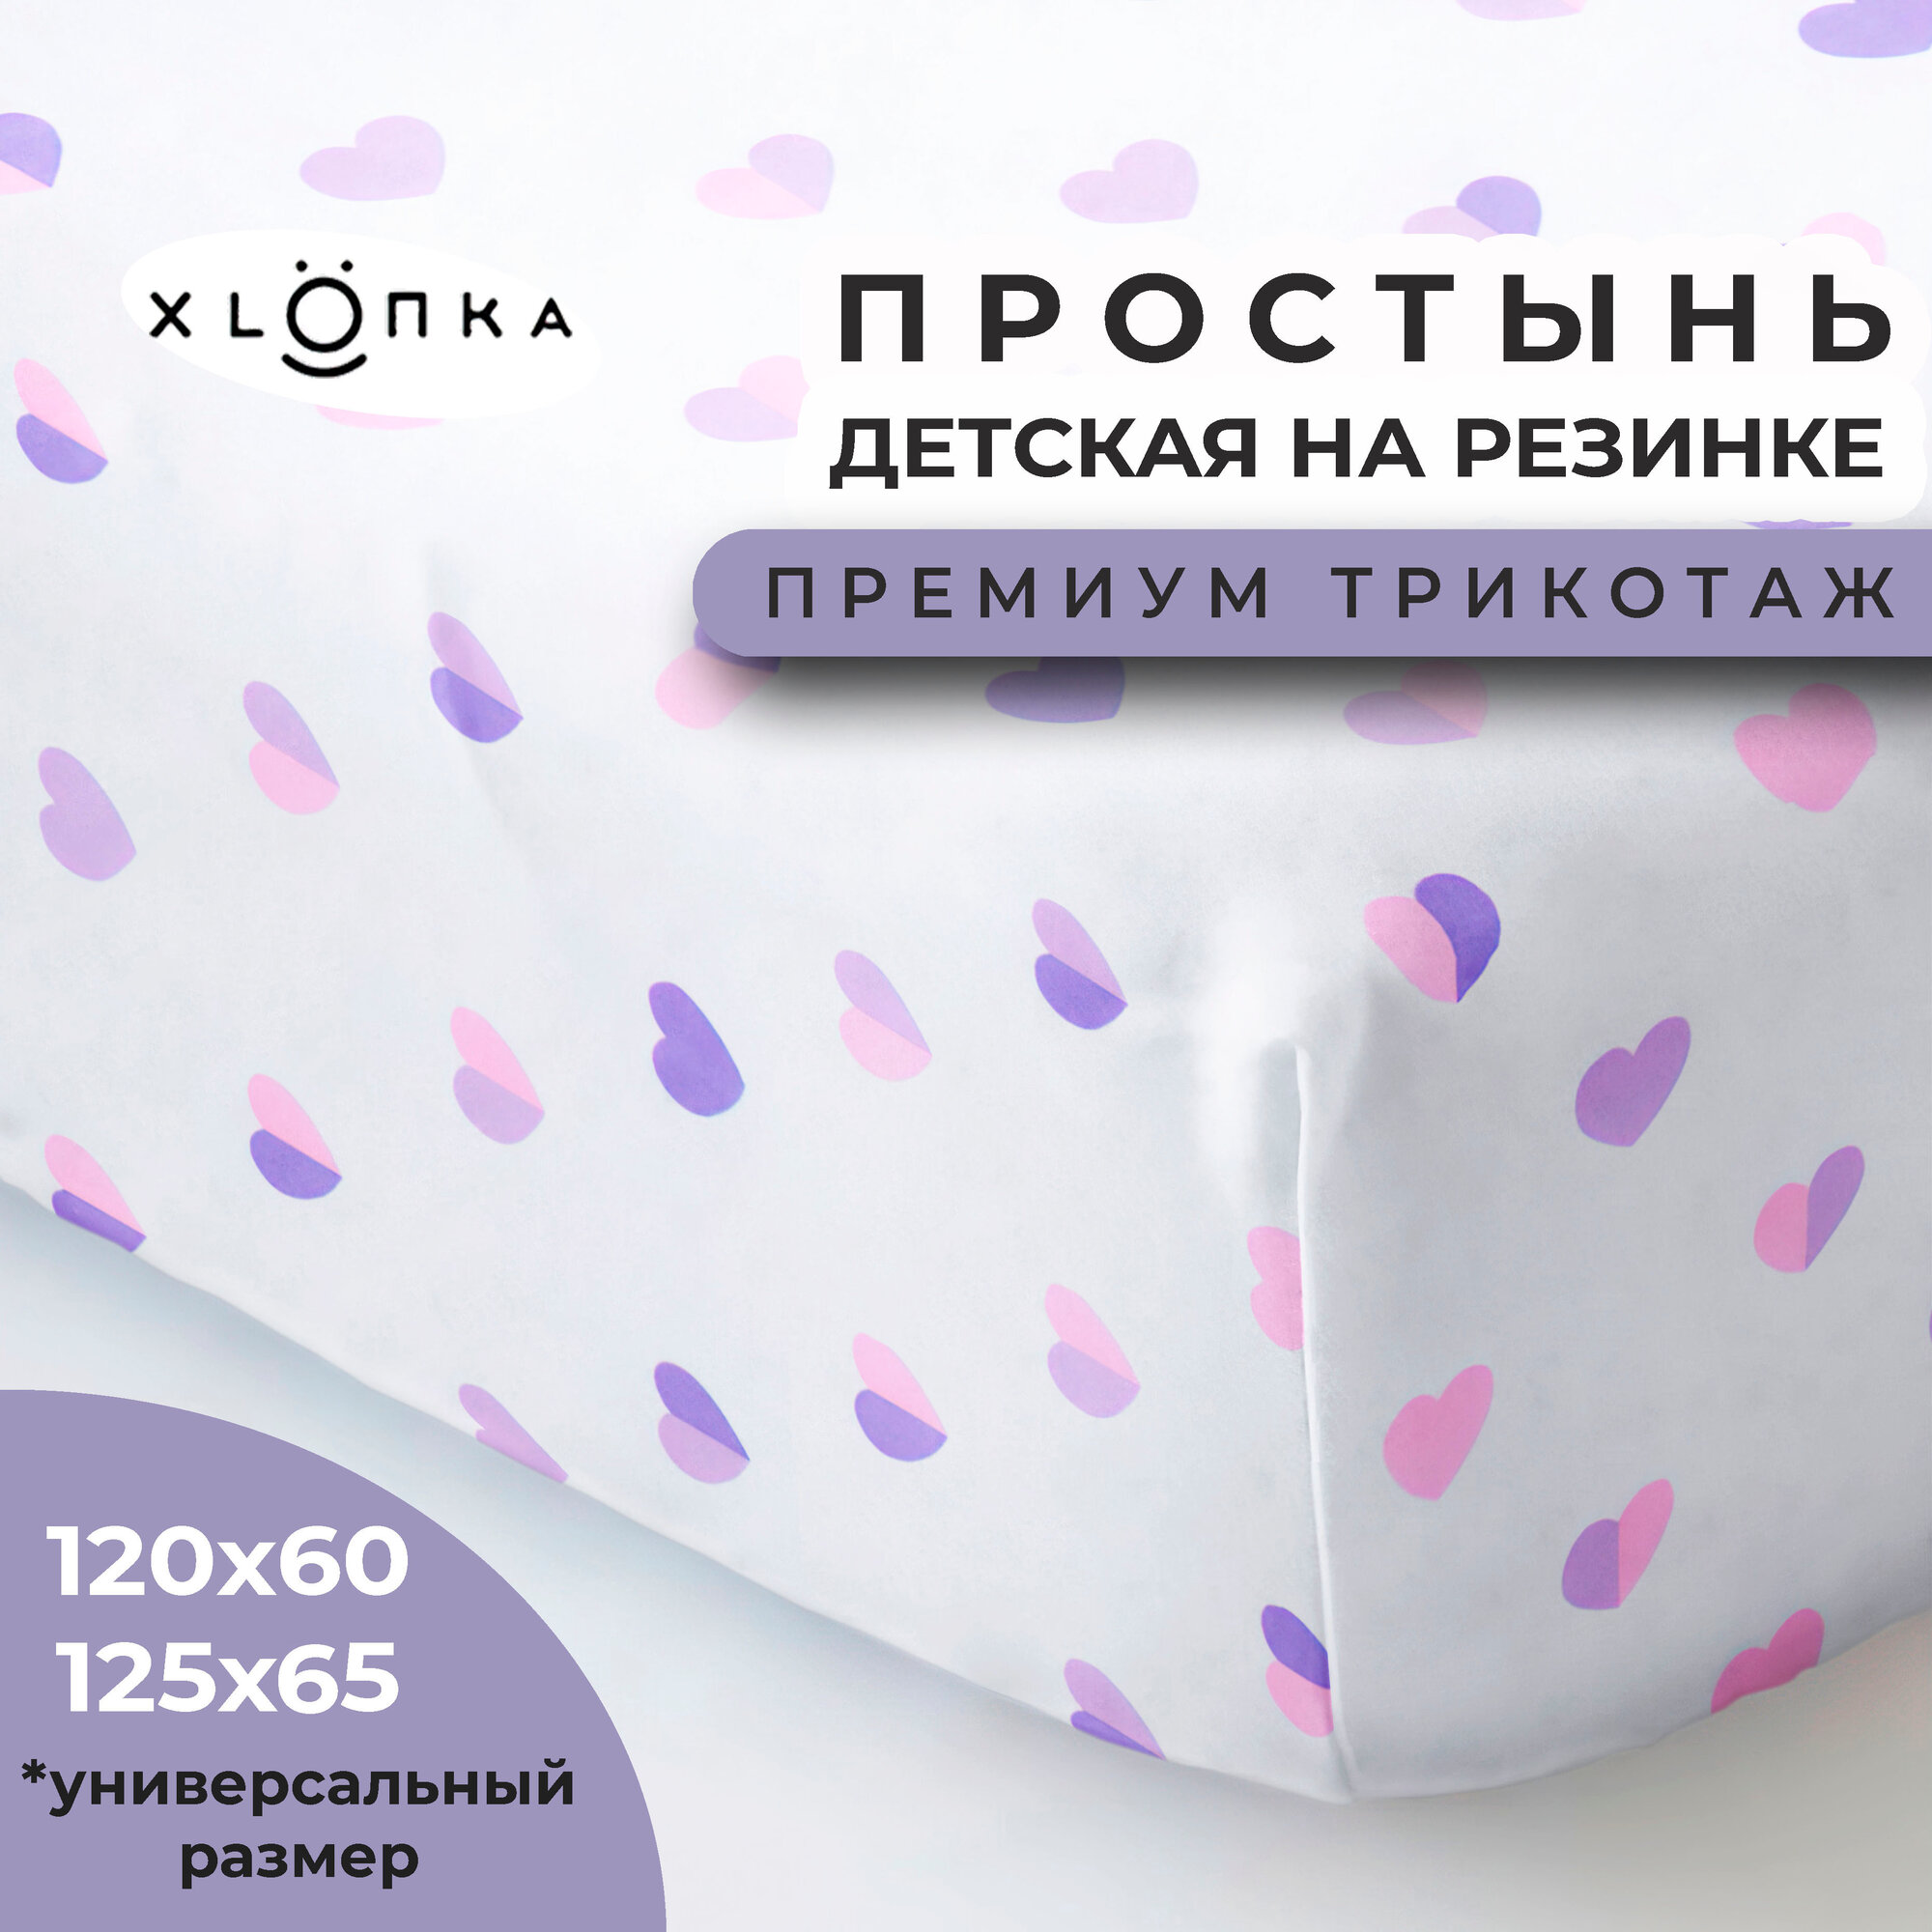 Простыня на резинке детская 120x60 см, премиум трикотаж в детскую кроватку, с принтом, хлопок , XLOПka